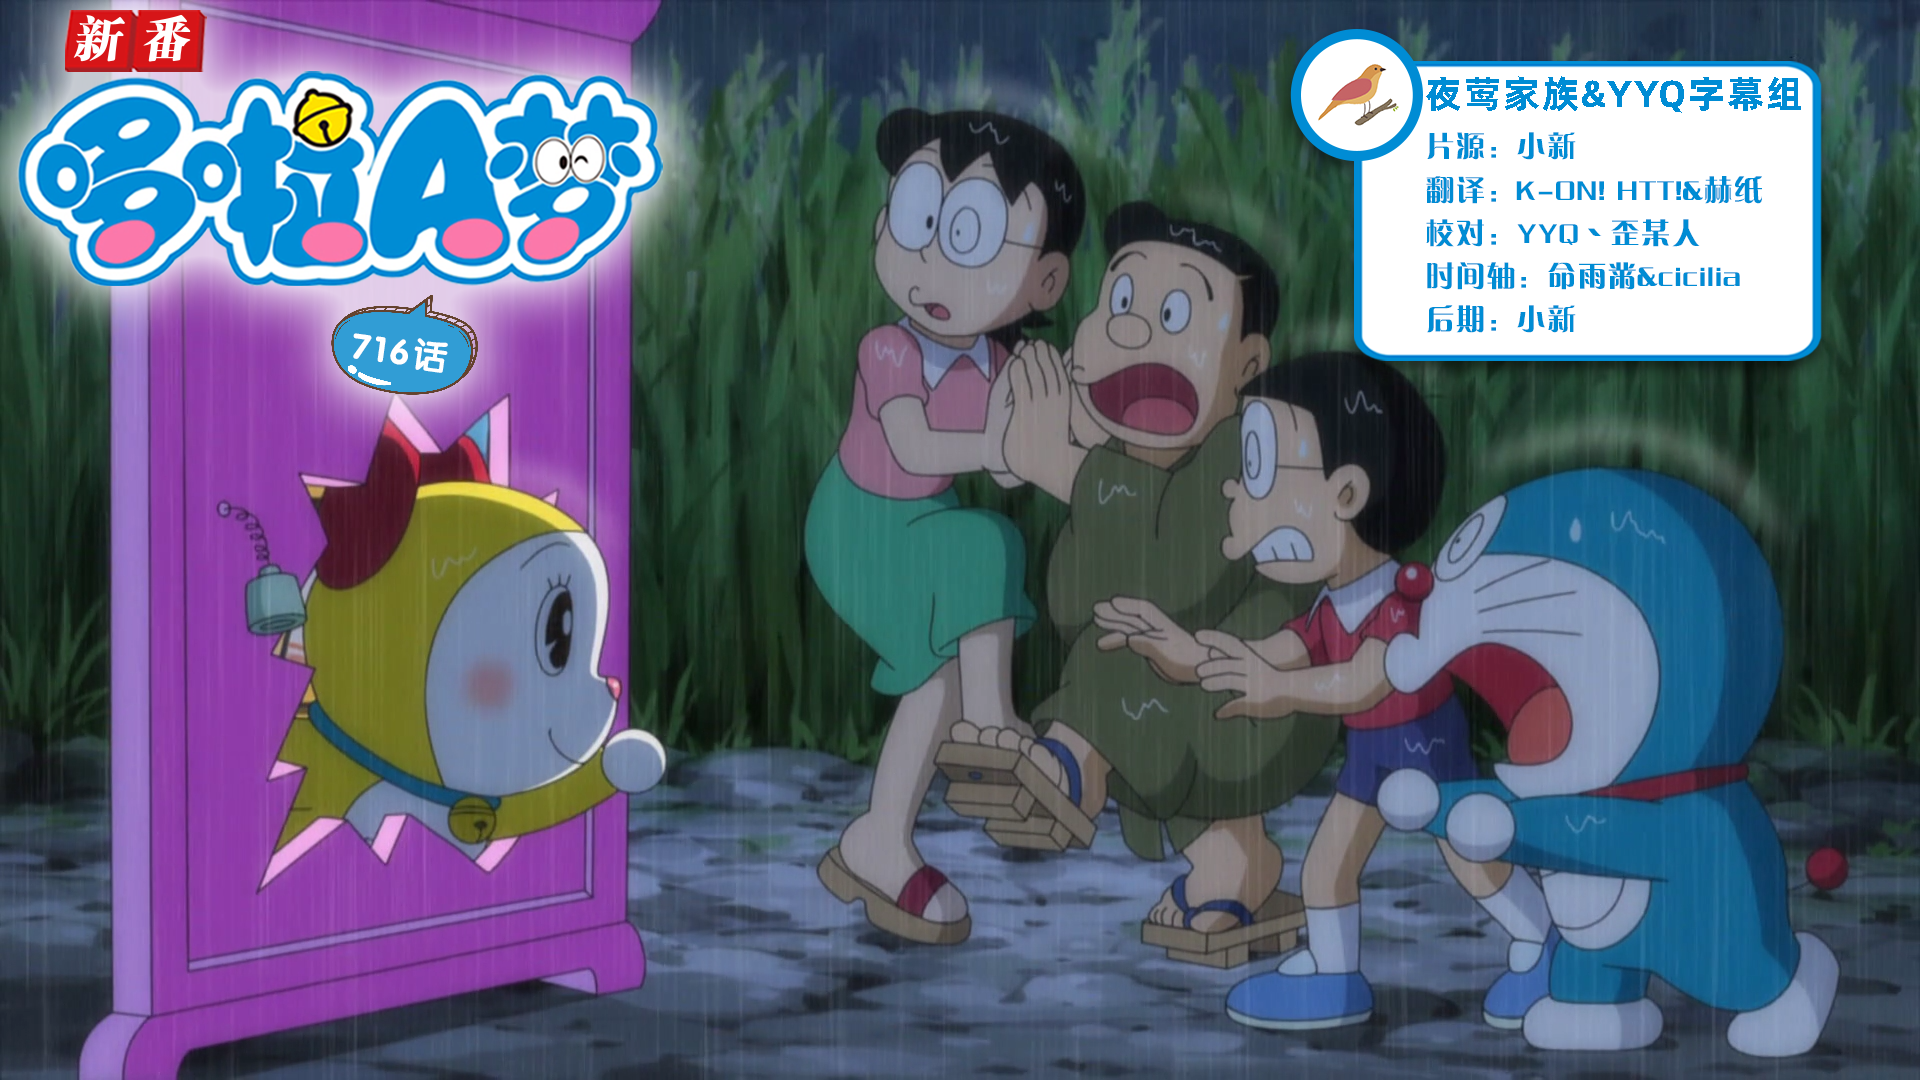 [夜莺家族&YYQ字幕组]New Doraemon 哆啦A梦新番[716][2022.07.23][AVC][1080P][GB_JP]插图icecomic动漫-云之彼端,约定的地方(´･ᴗ･`)2